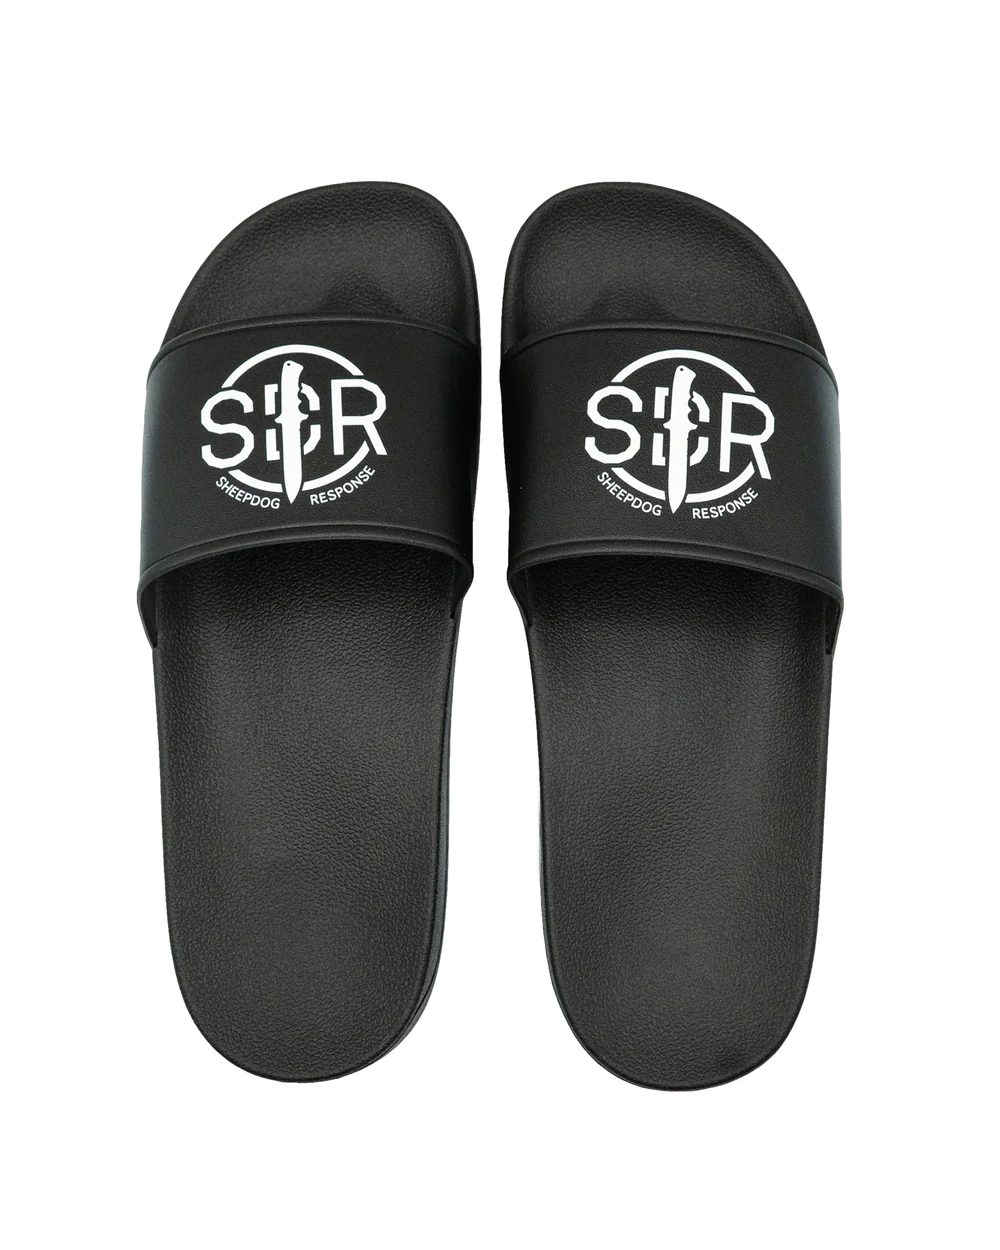 SDR Slides Sandals